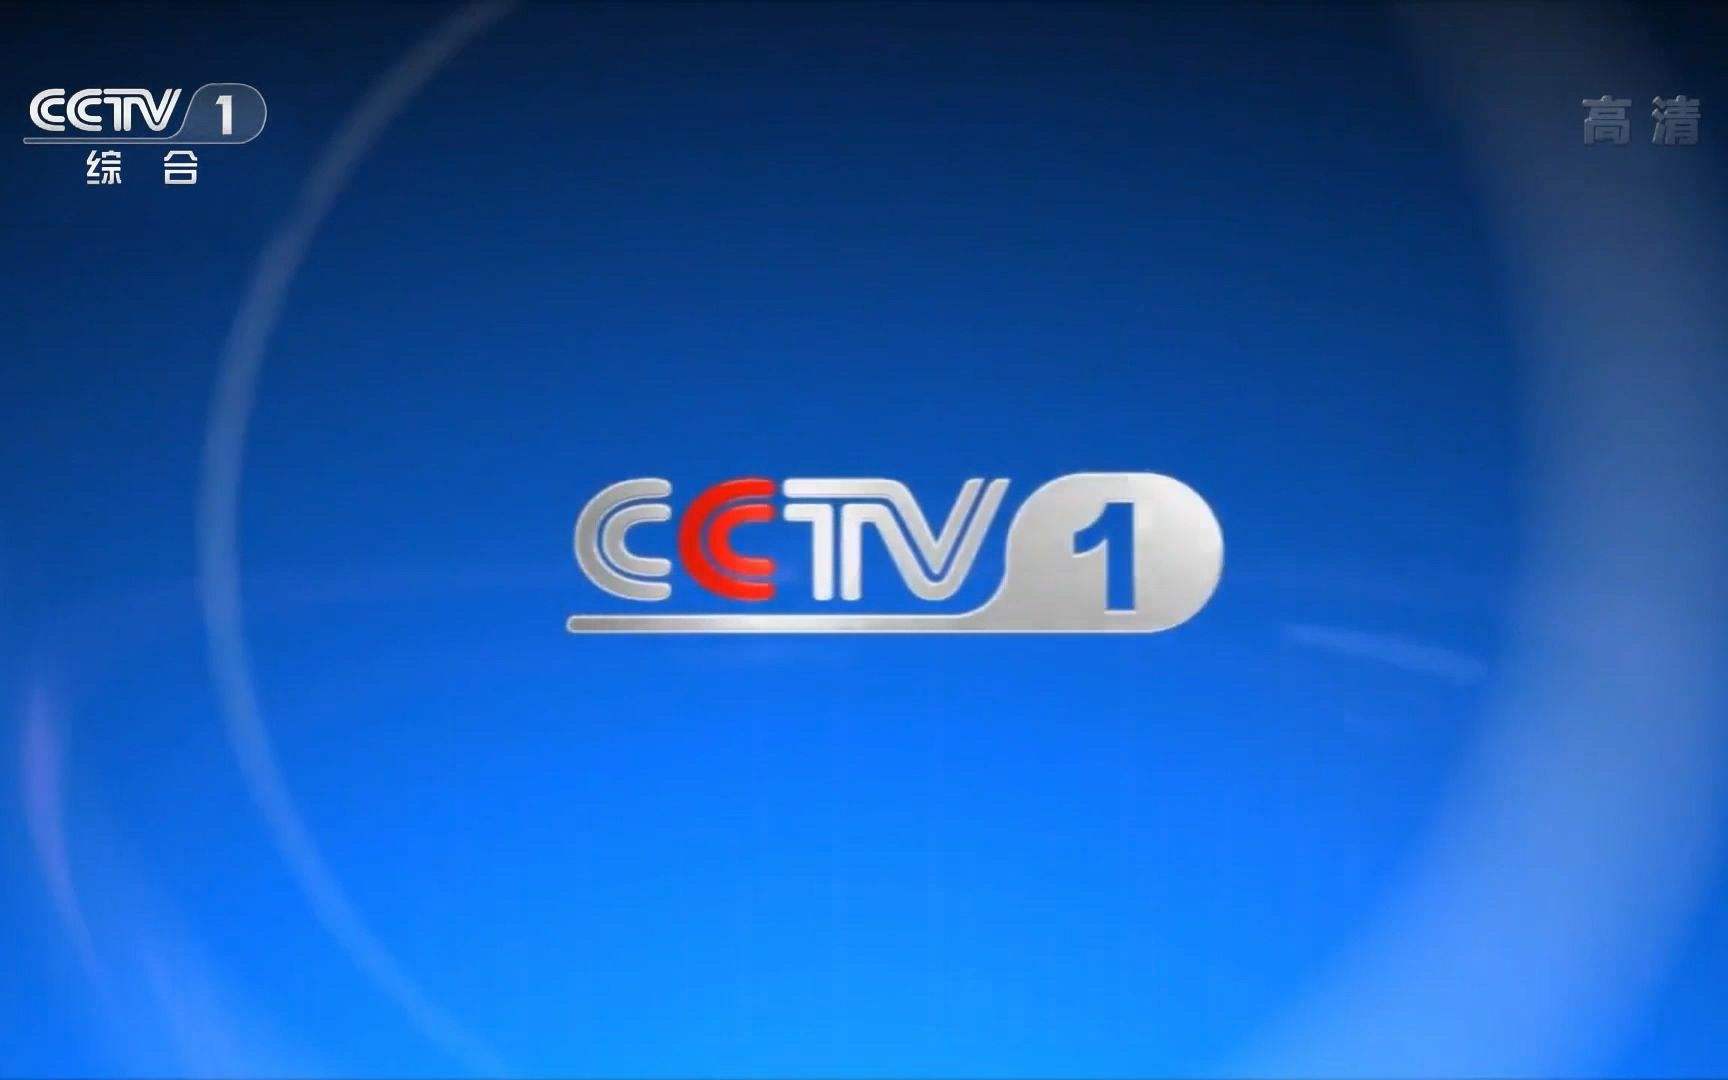 2022年央视CCTV-1综合频道栏目广告刊例价格